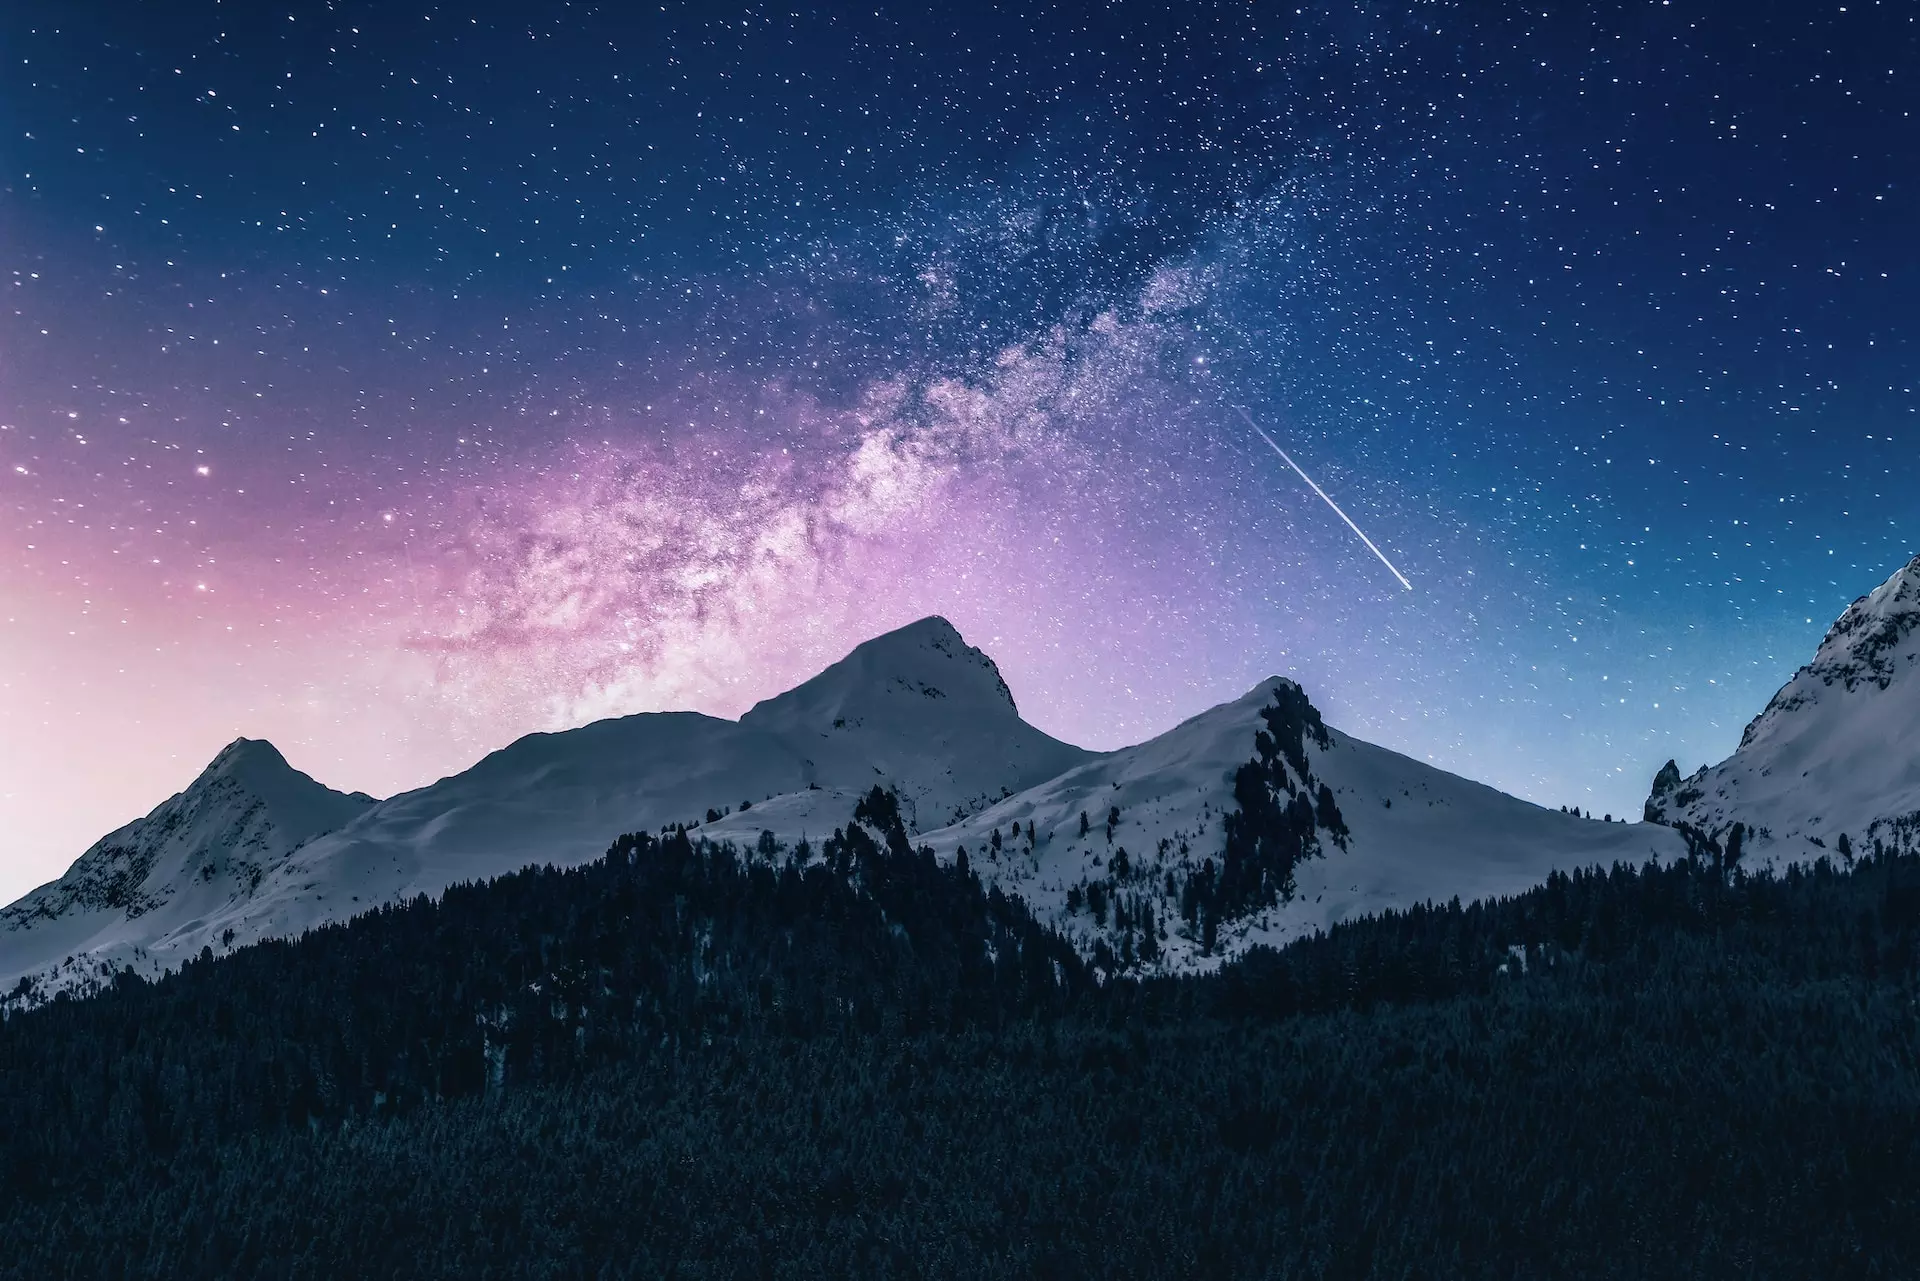 Une trace d'avion dans le ciel nocturne au dessus des montagnes - Photo by Benjamin Voros on https://unsplash.com/fr/photos/phIFdC6lA4E